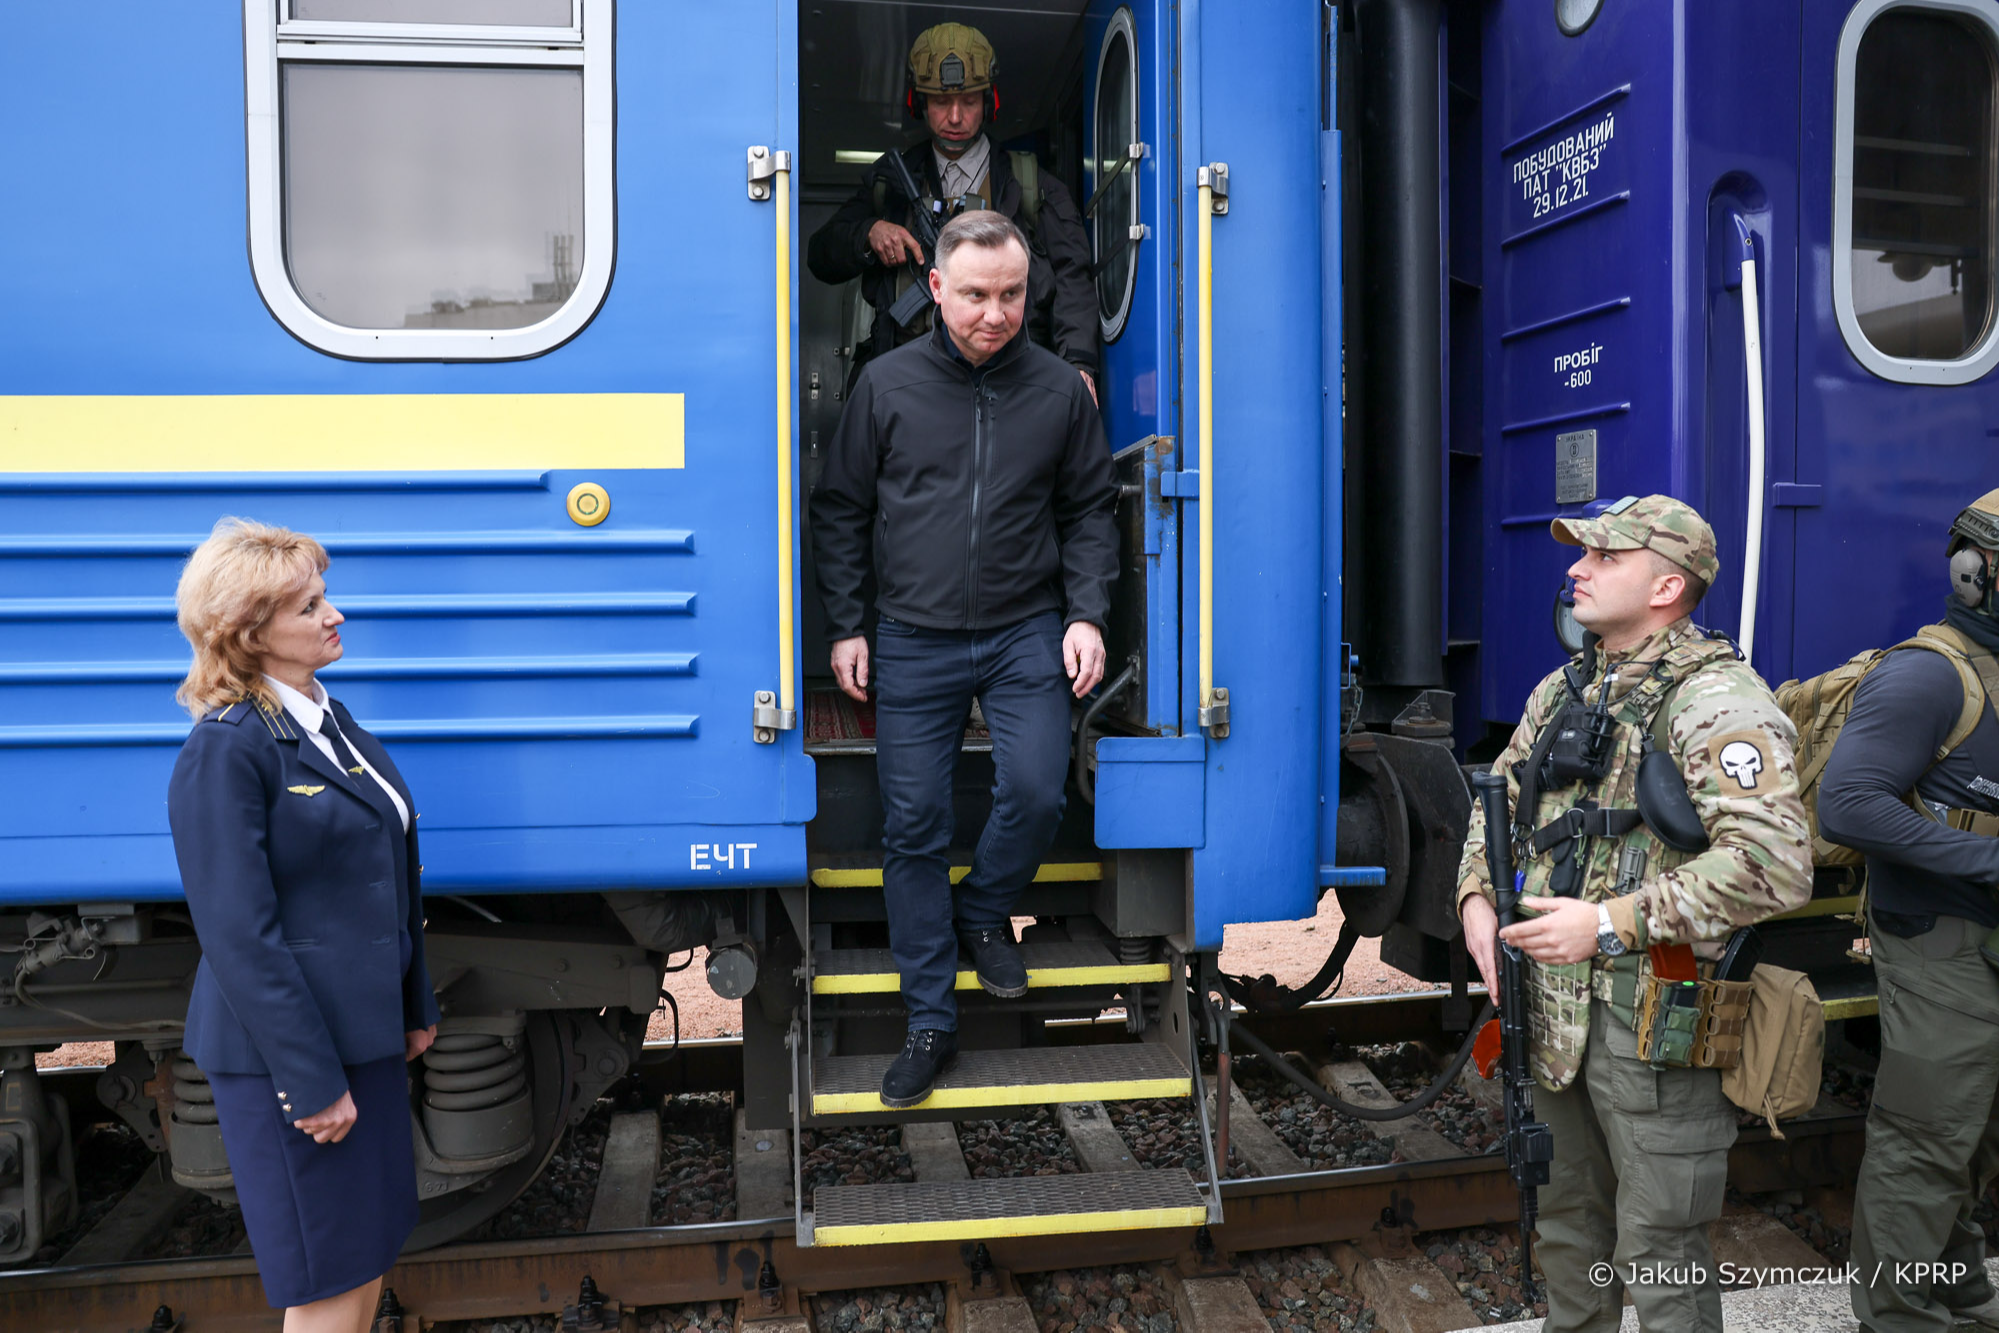 Президенти Польщі та країн Балтії прибули «Укрзалізницею» у Київ. Як їх зустріли? (фото)